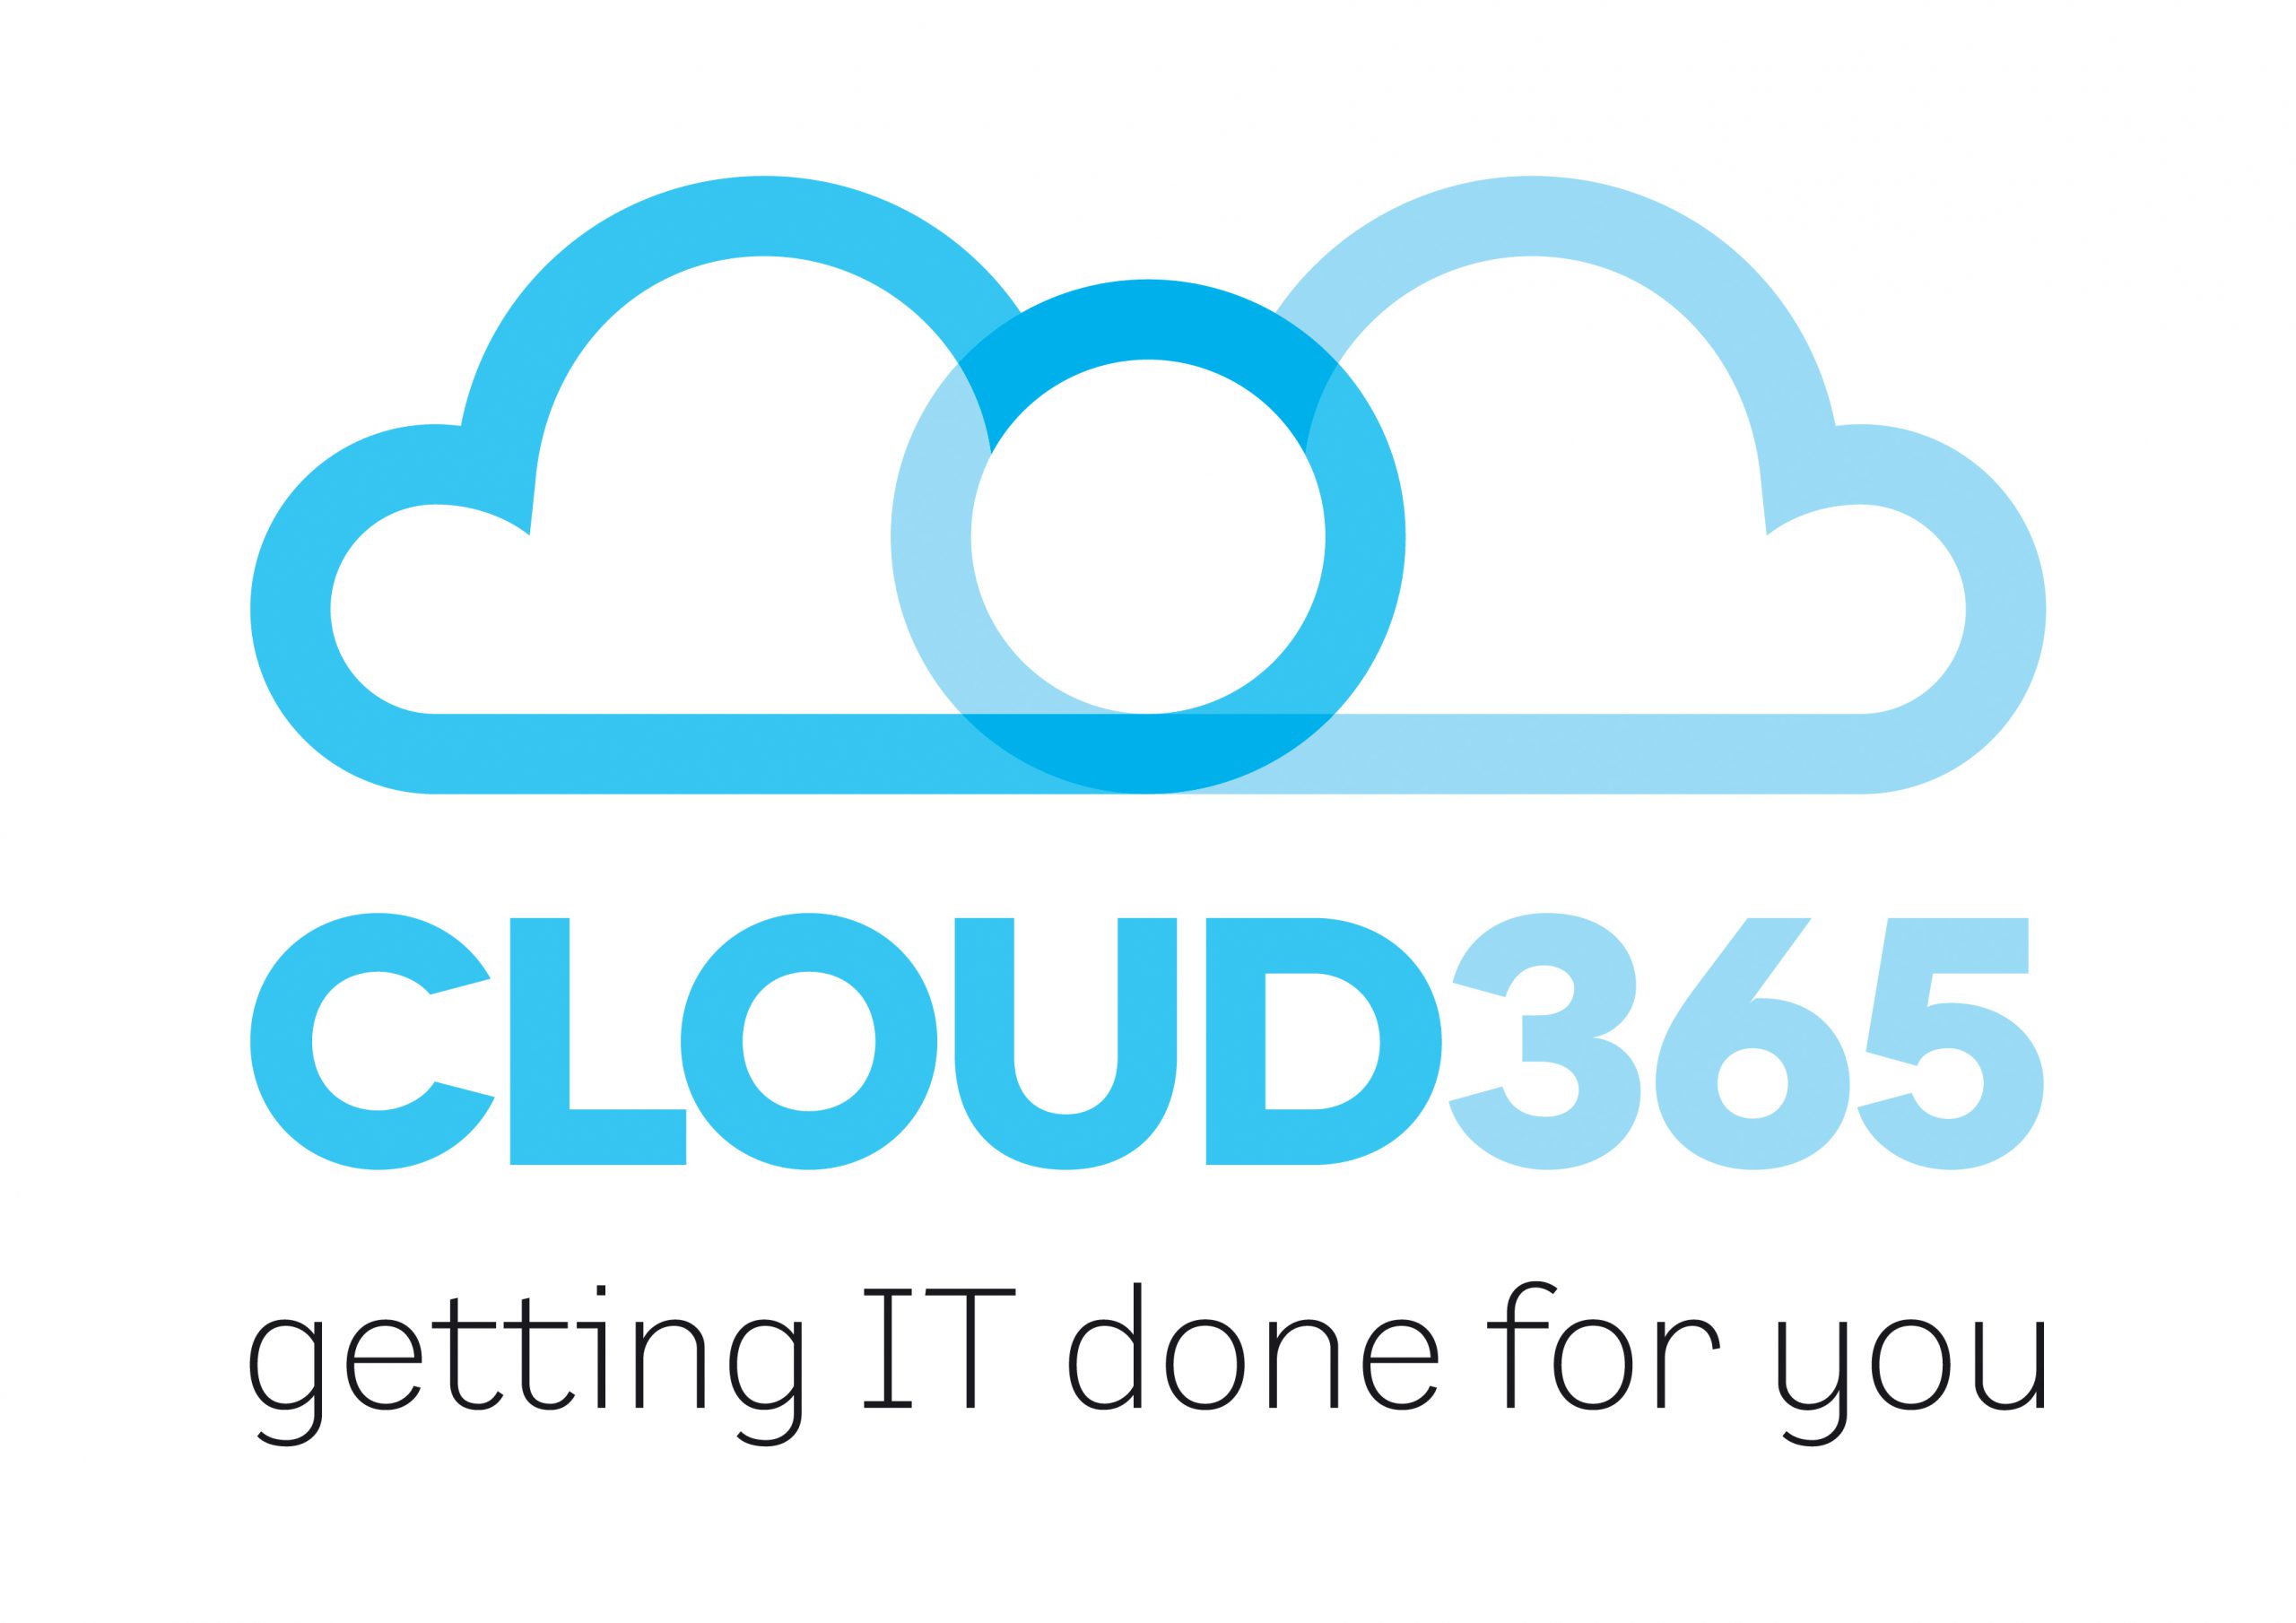 Cloud 365